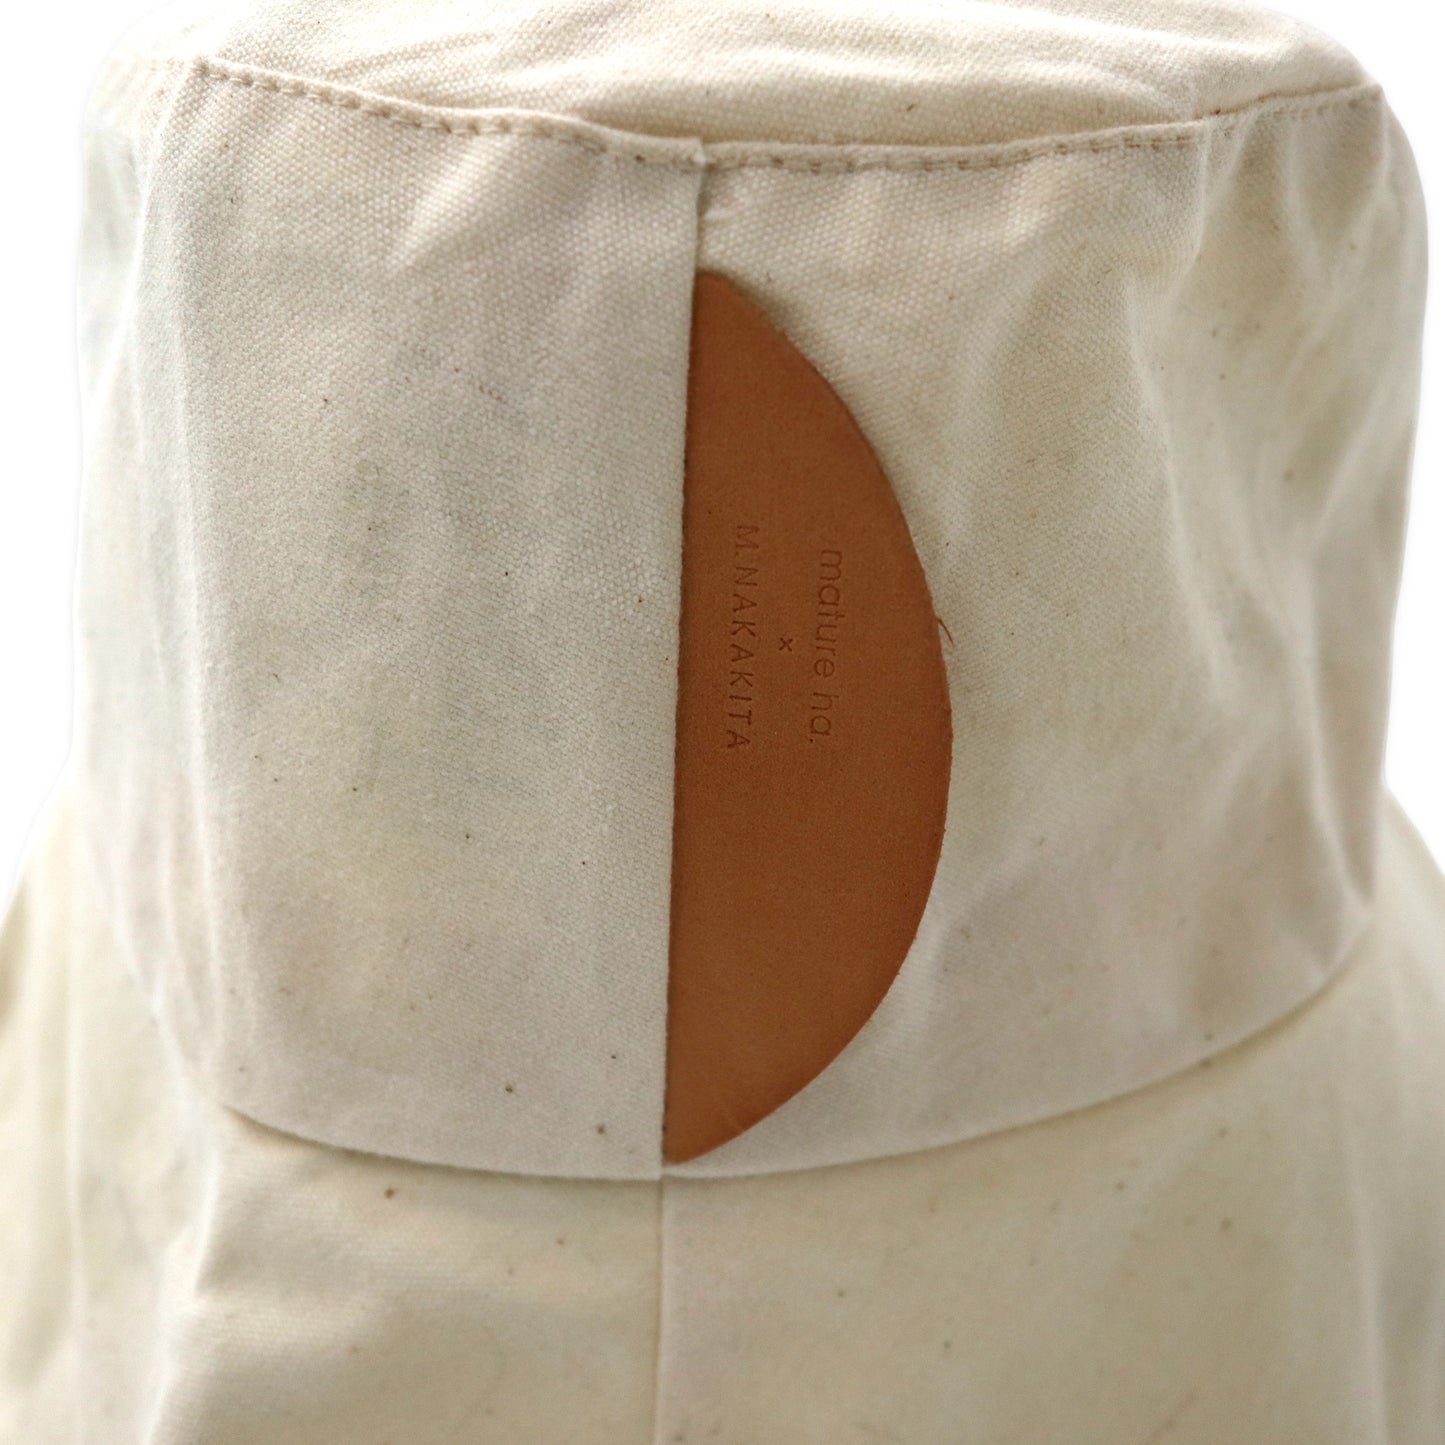 mature ha. × M.NAKAKITA パラフィンハット FREE ホワイト コットン paraffin hat wide random stitch CPF-013 日本製 未使用品